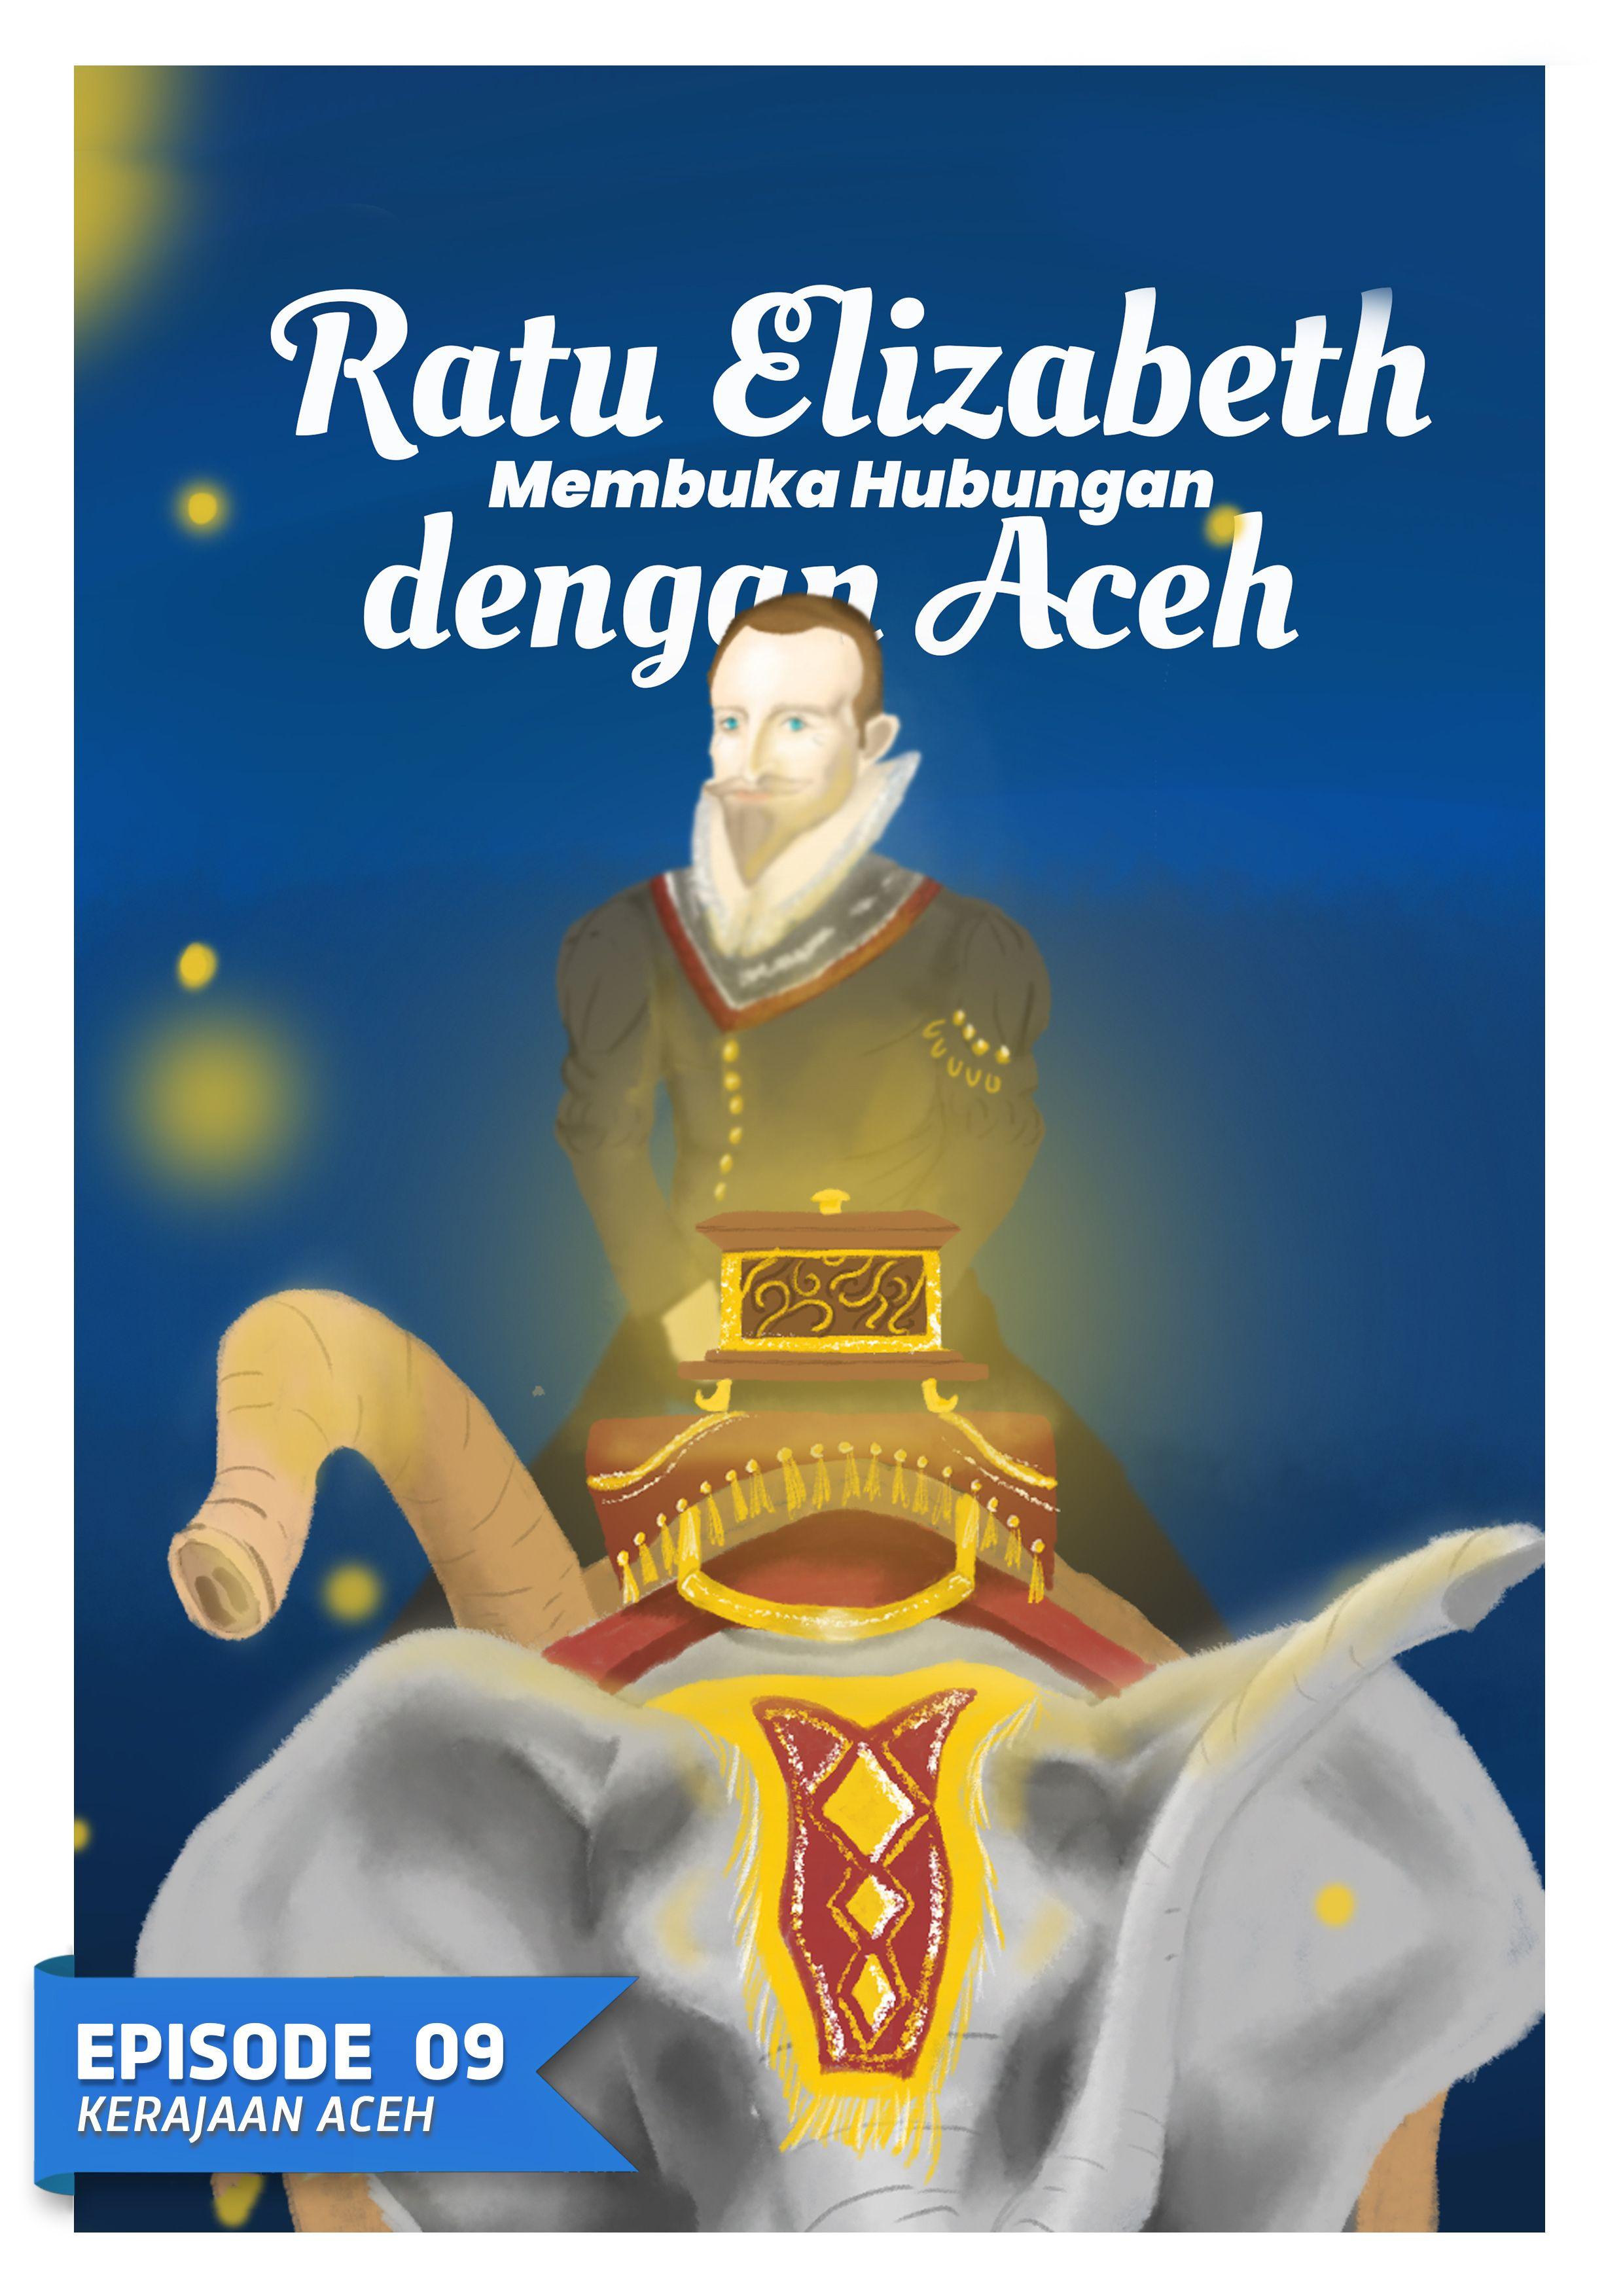 Ratu Elizabeth Membuka Hubungan dengan Aceh